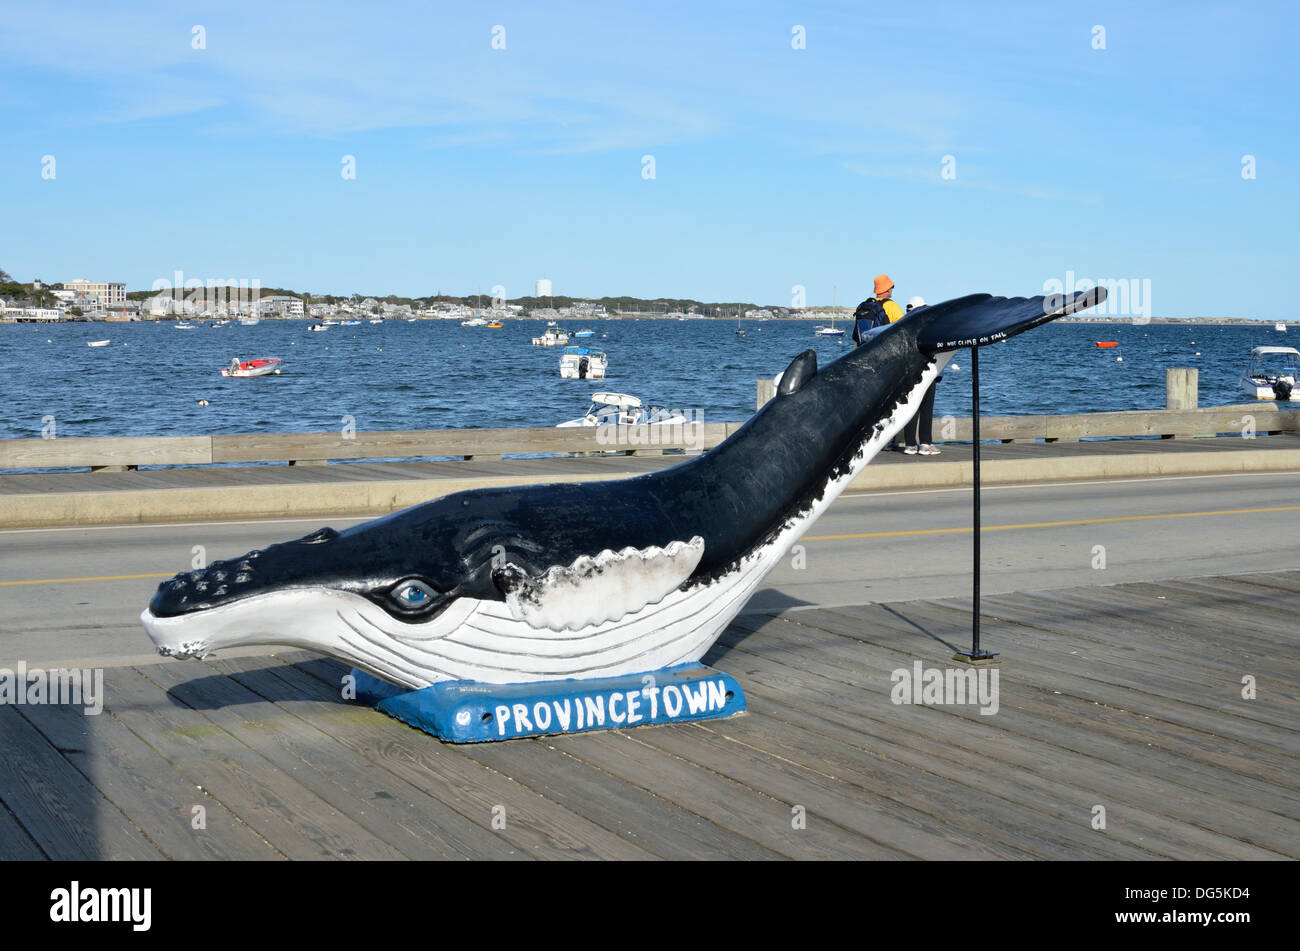 Sculpture de baleines au bord de l'eau quai au port de Provincetown pittoresque Cape Cod dans le Massachusetts aux États-Unis. Banque D'Images